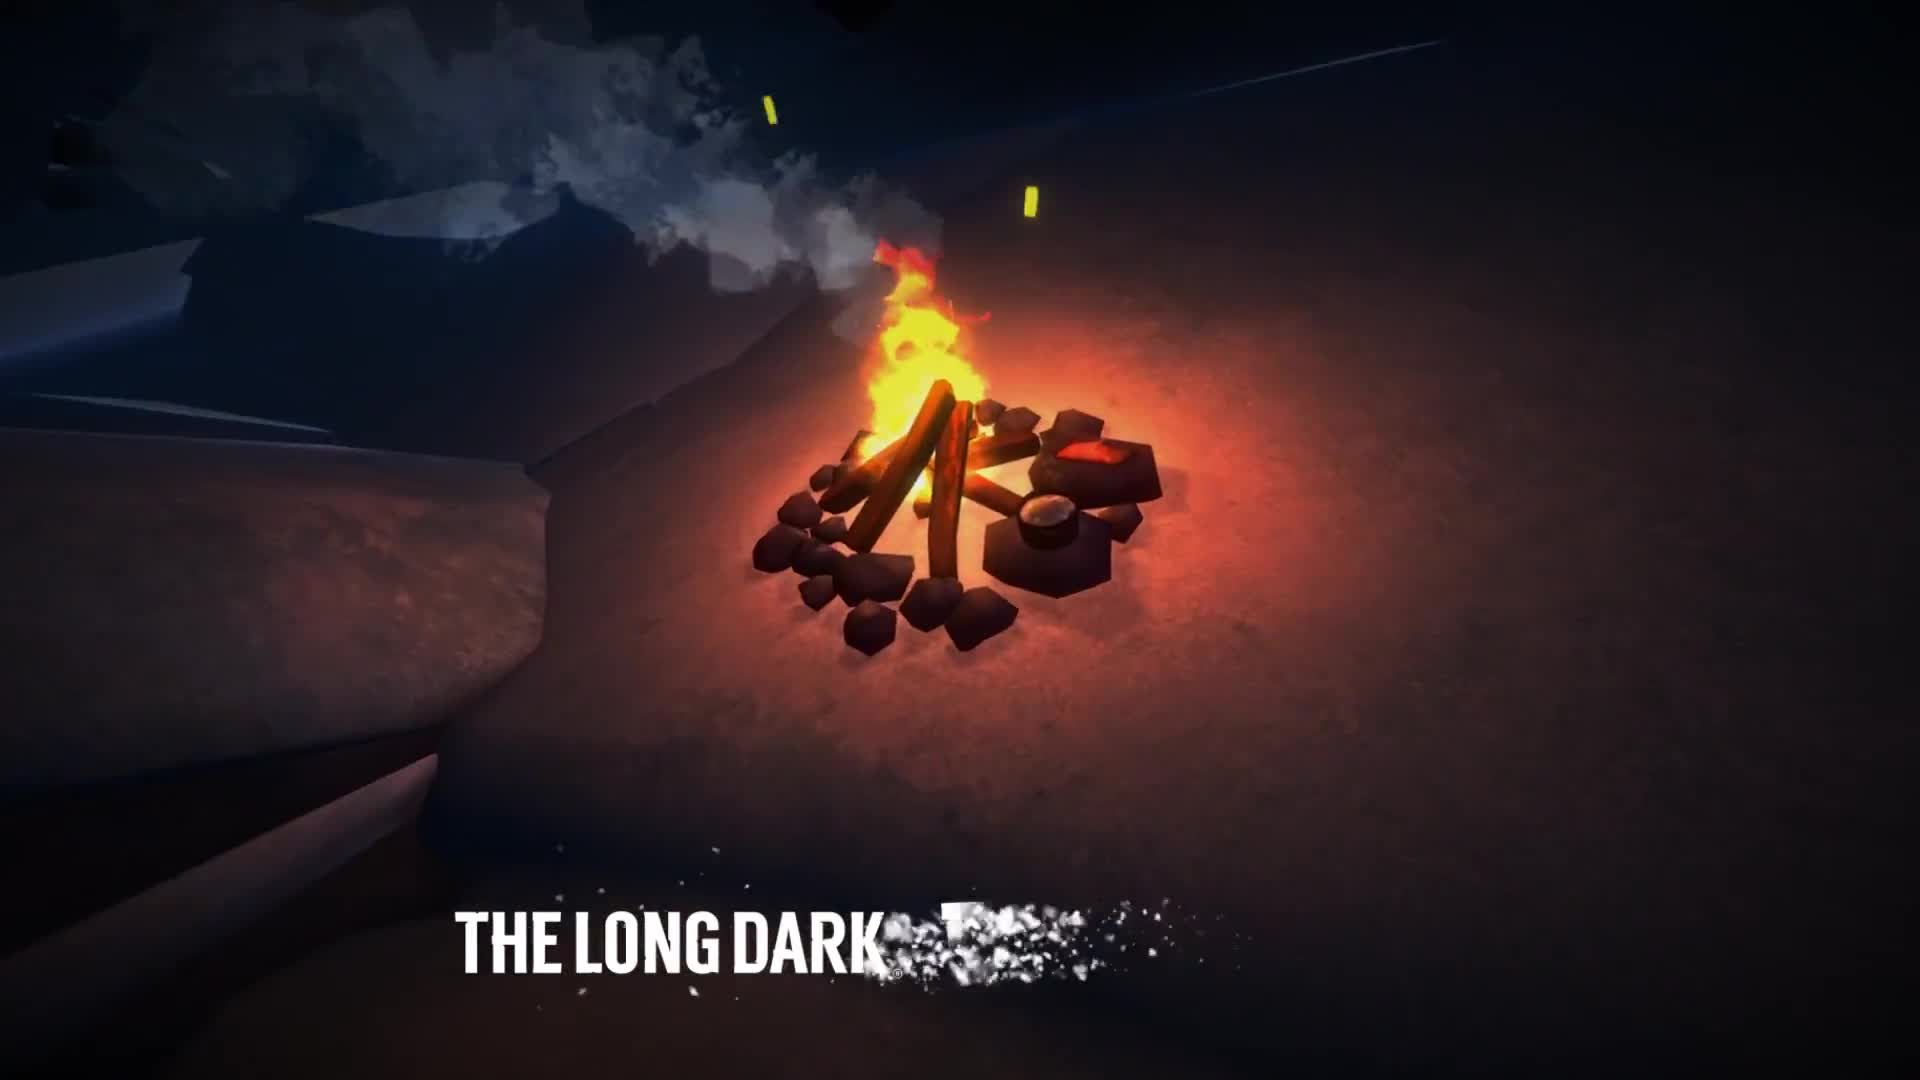 The Long Dark - Vigilant Flame update